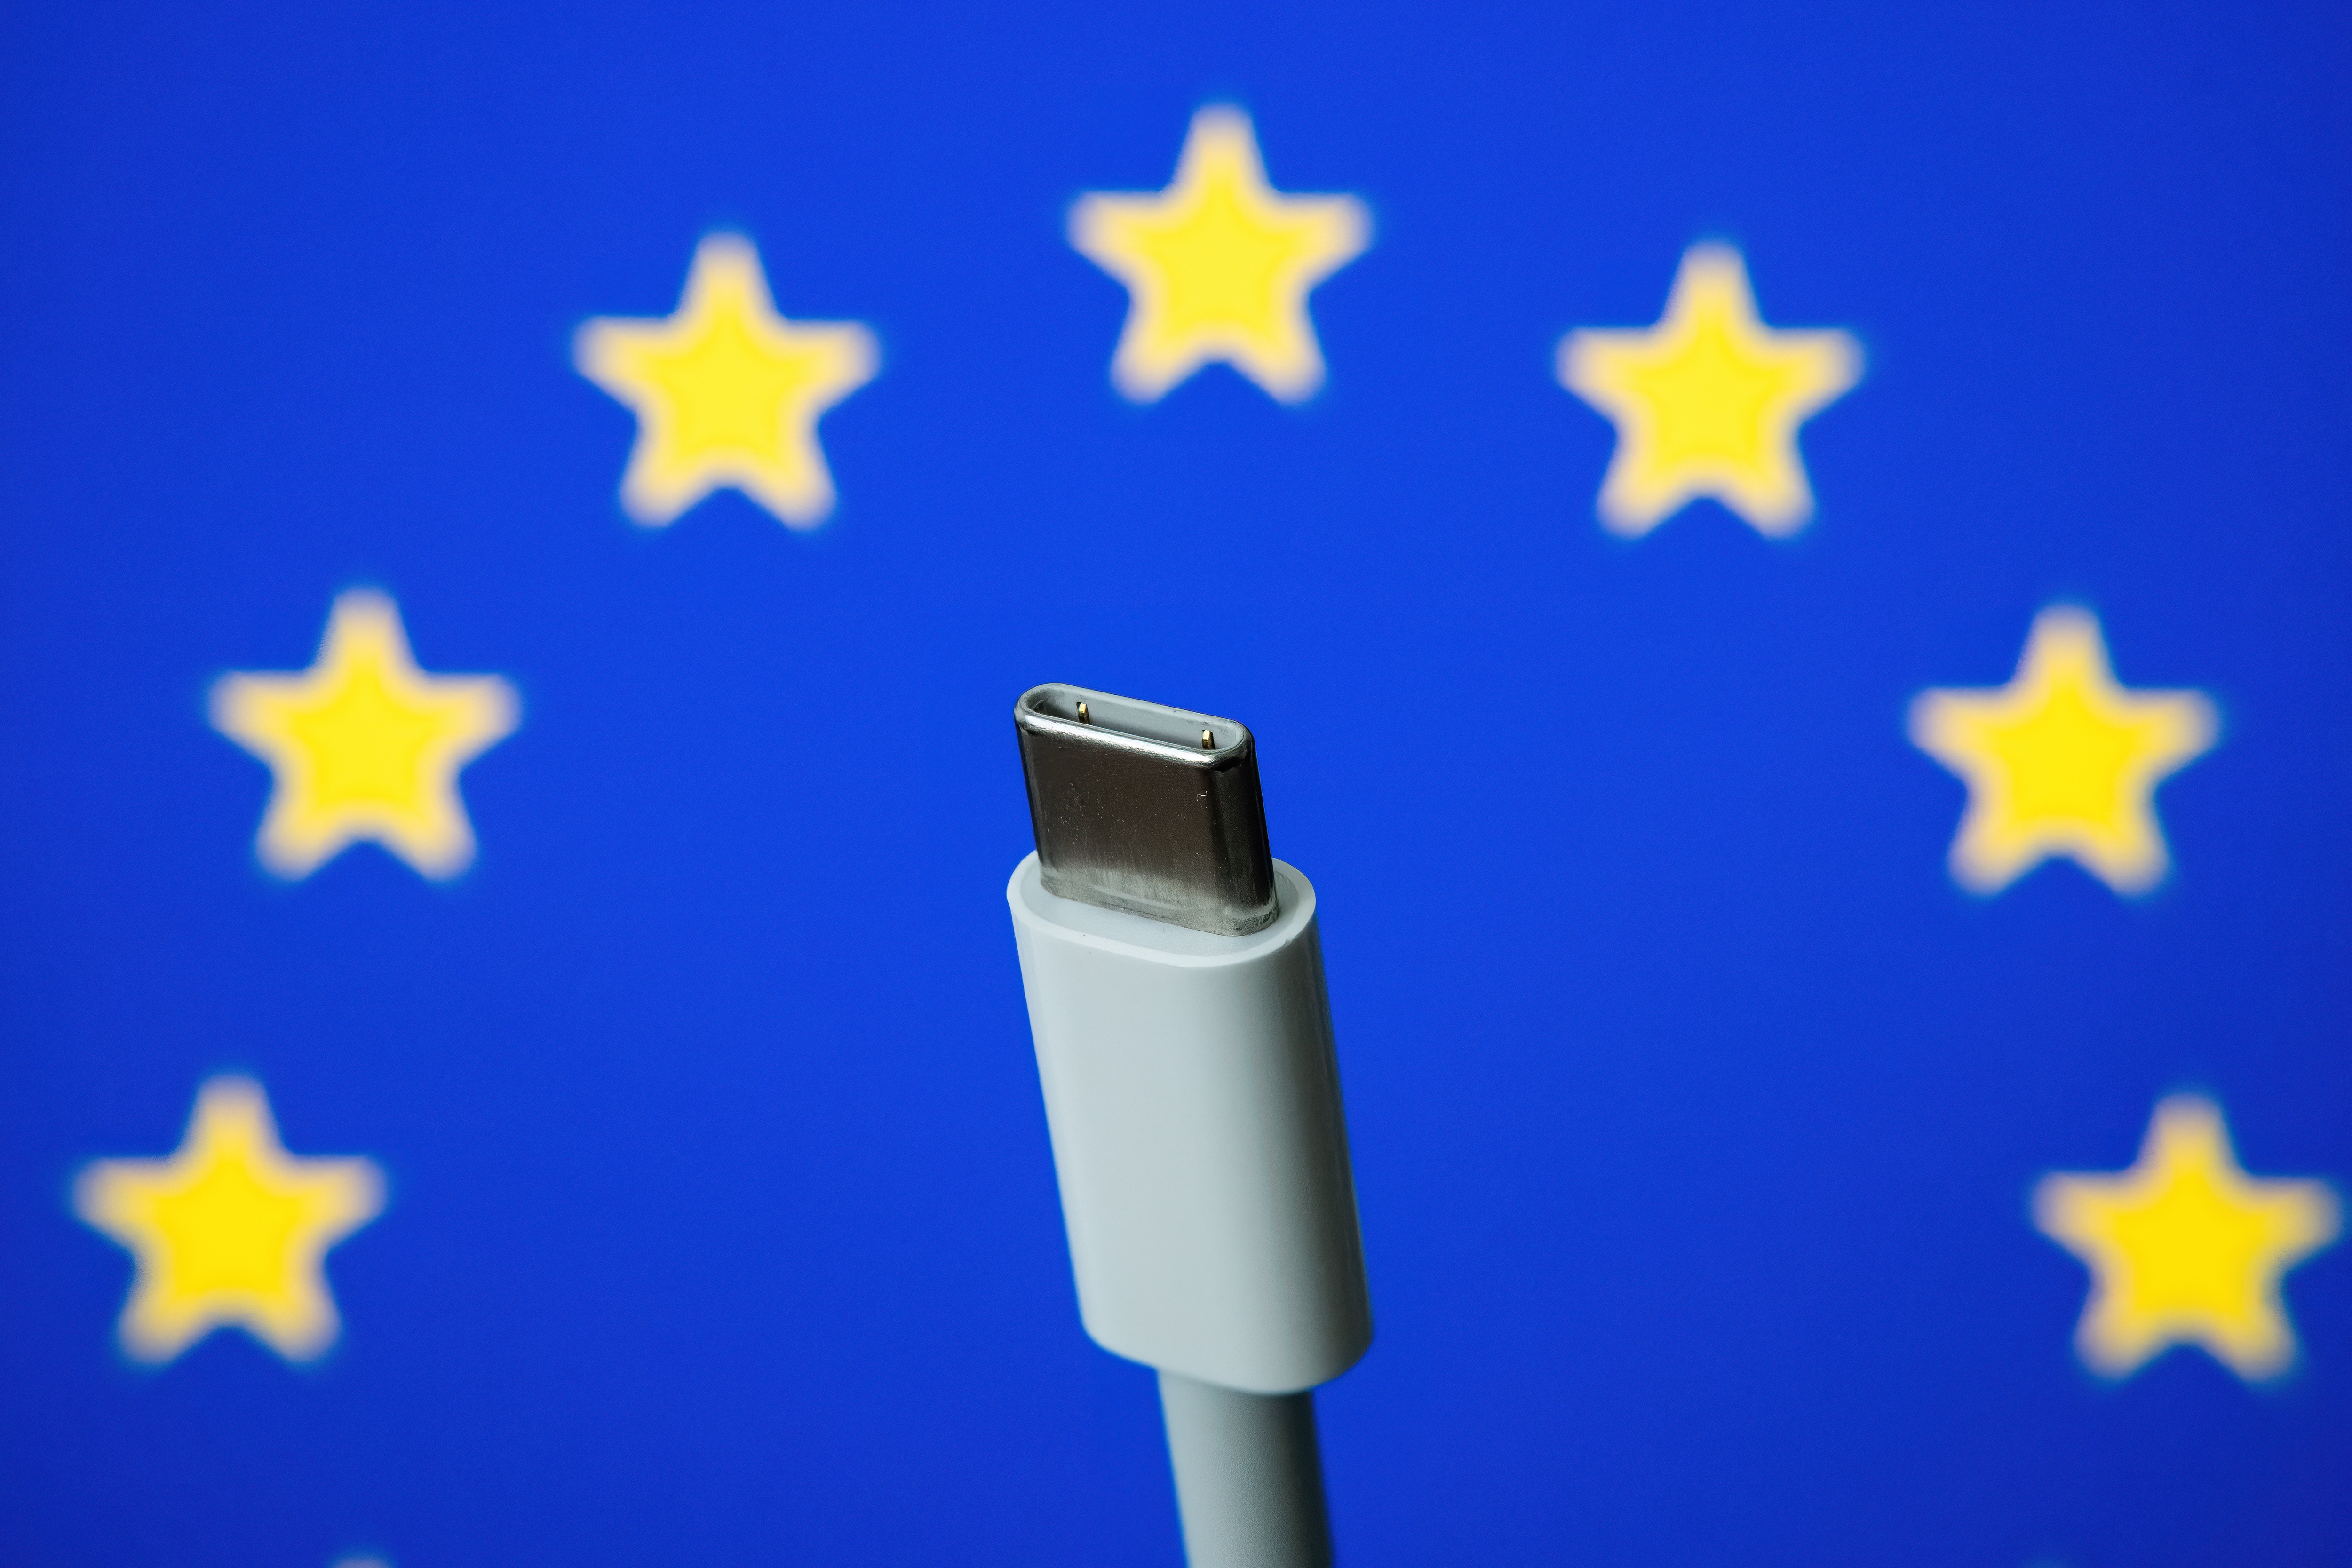     L'Union Européenne impose le chargeur USB-C pour tous les smartphones

